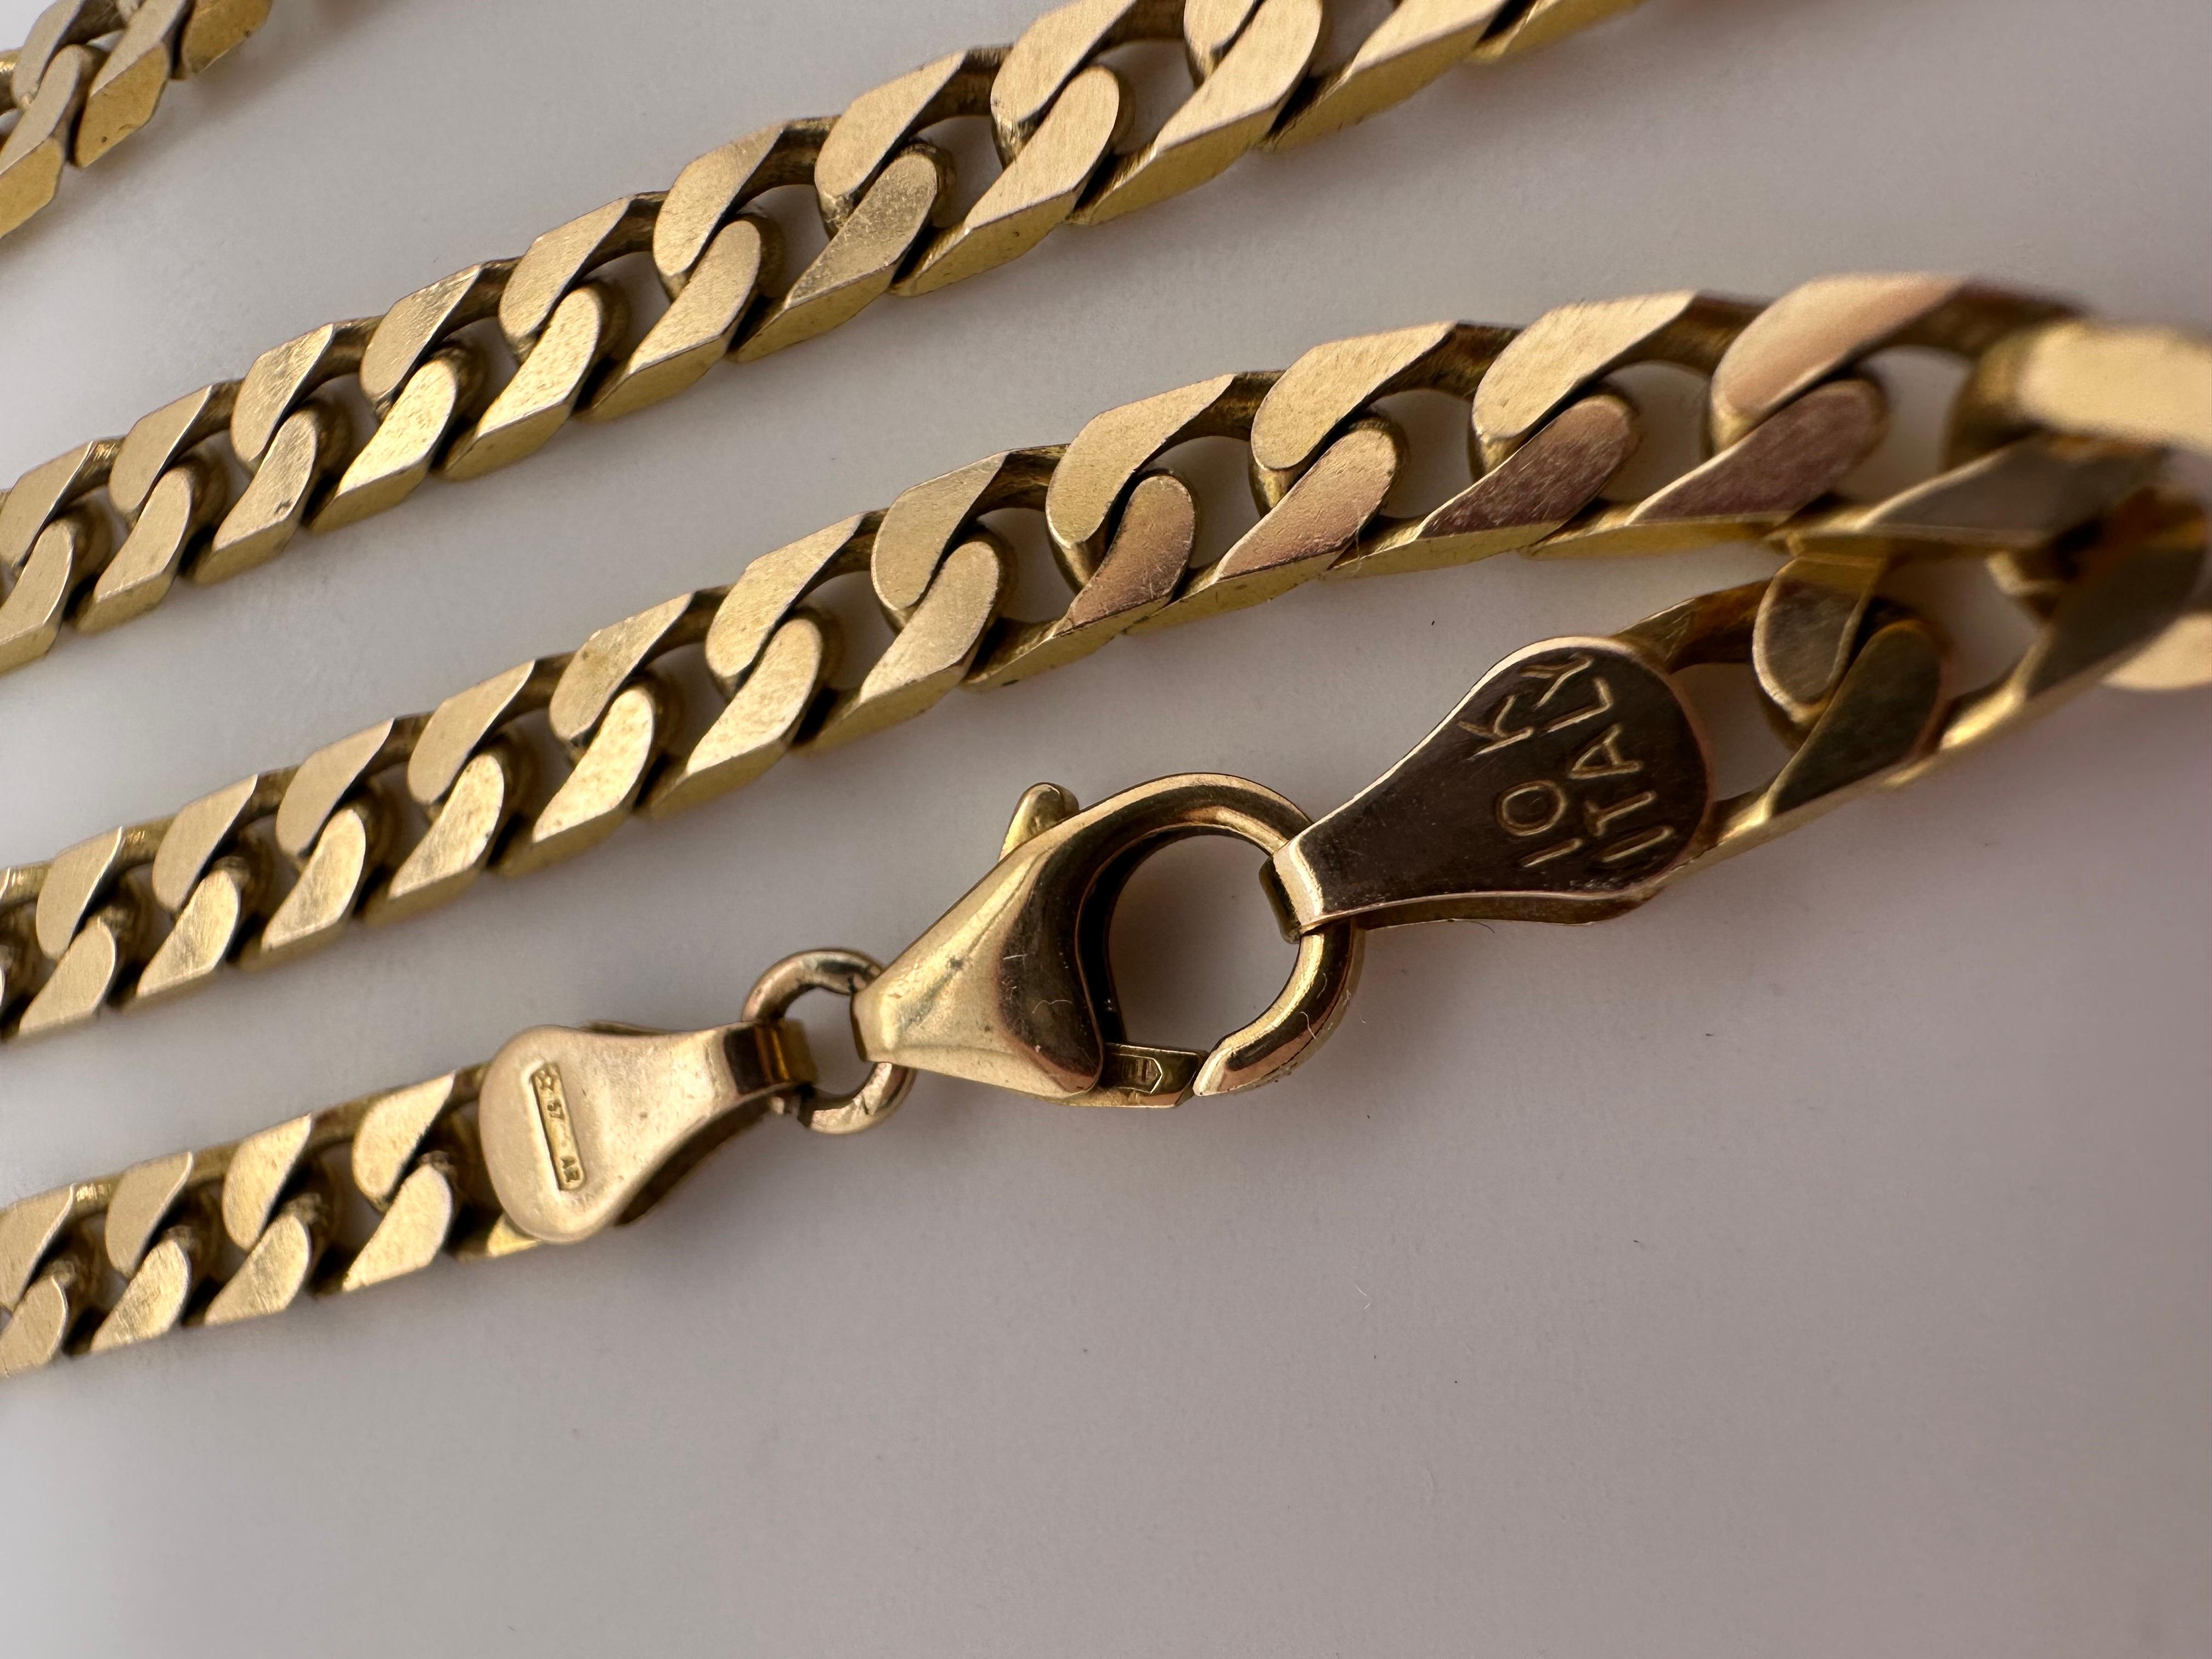 23 karat gold chain